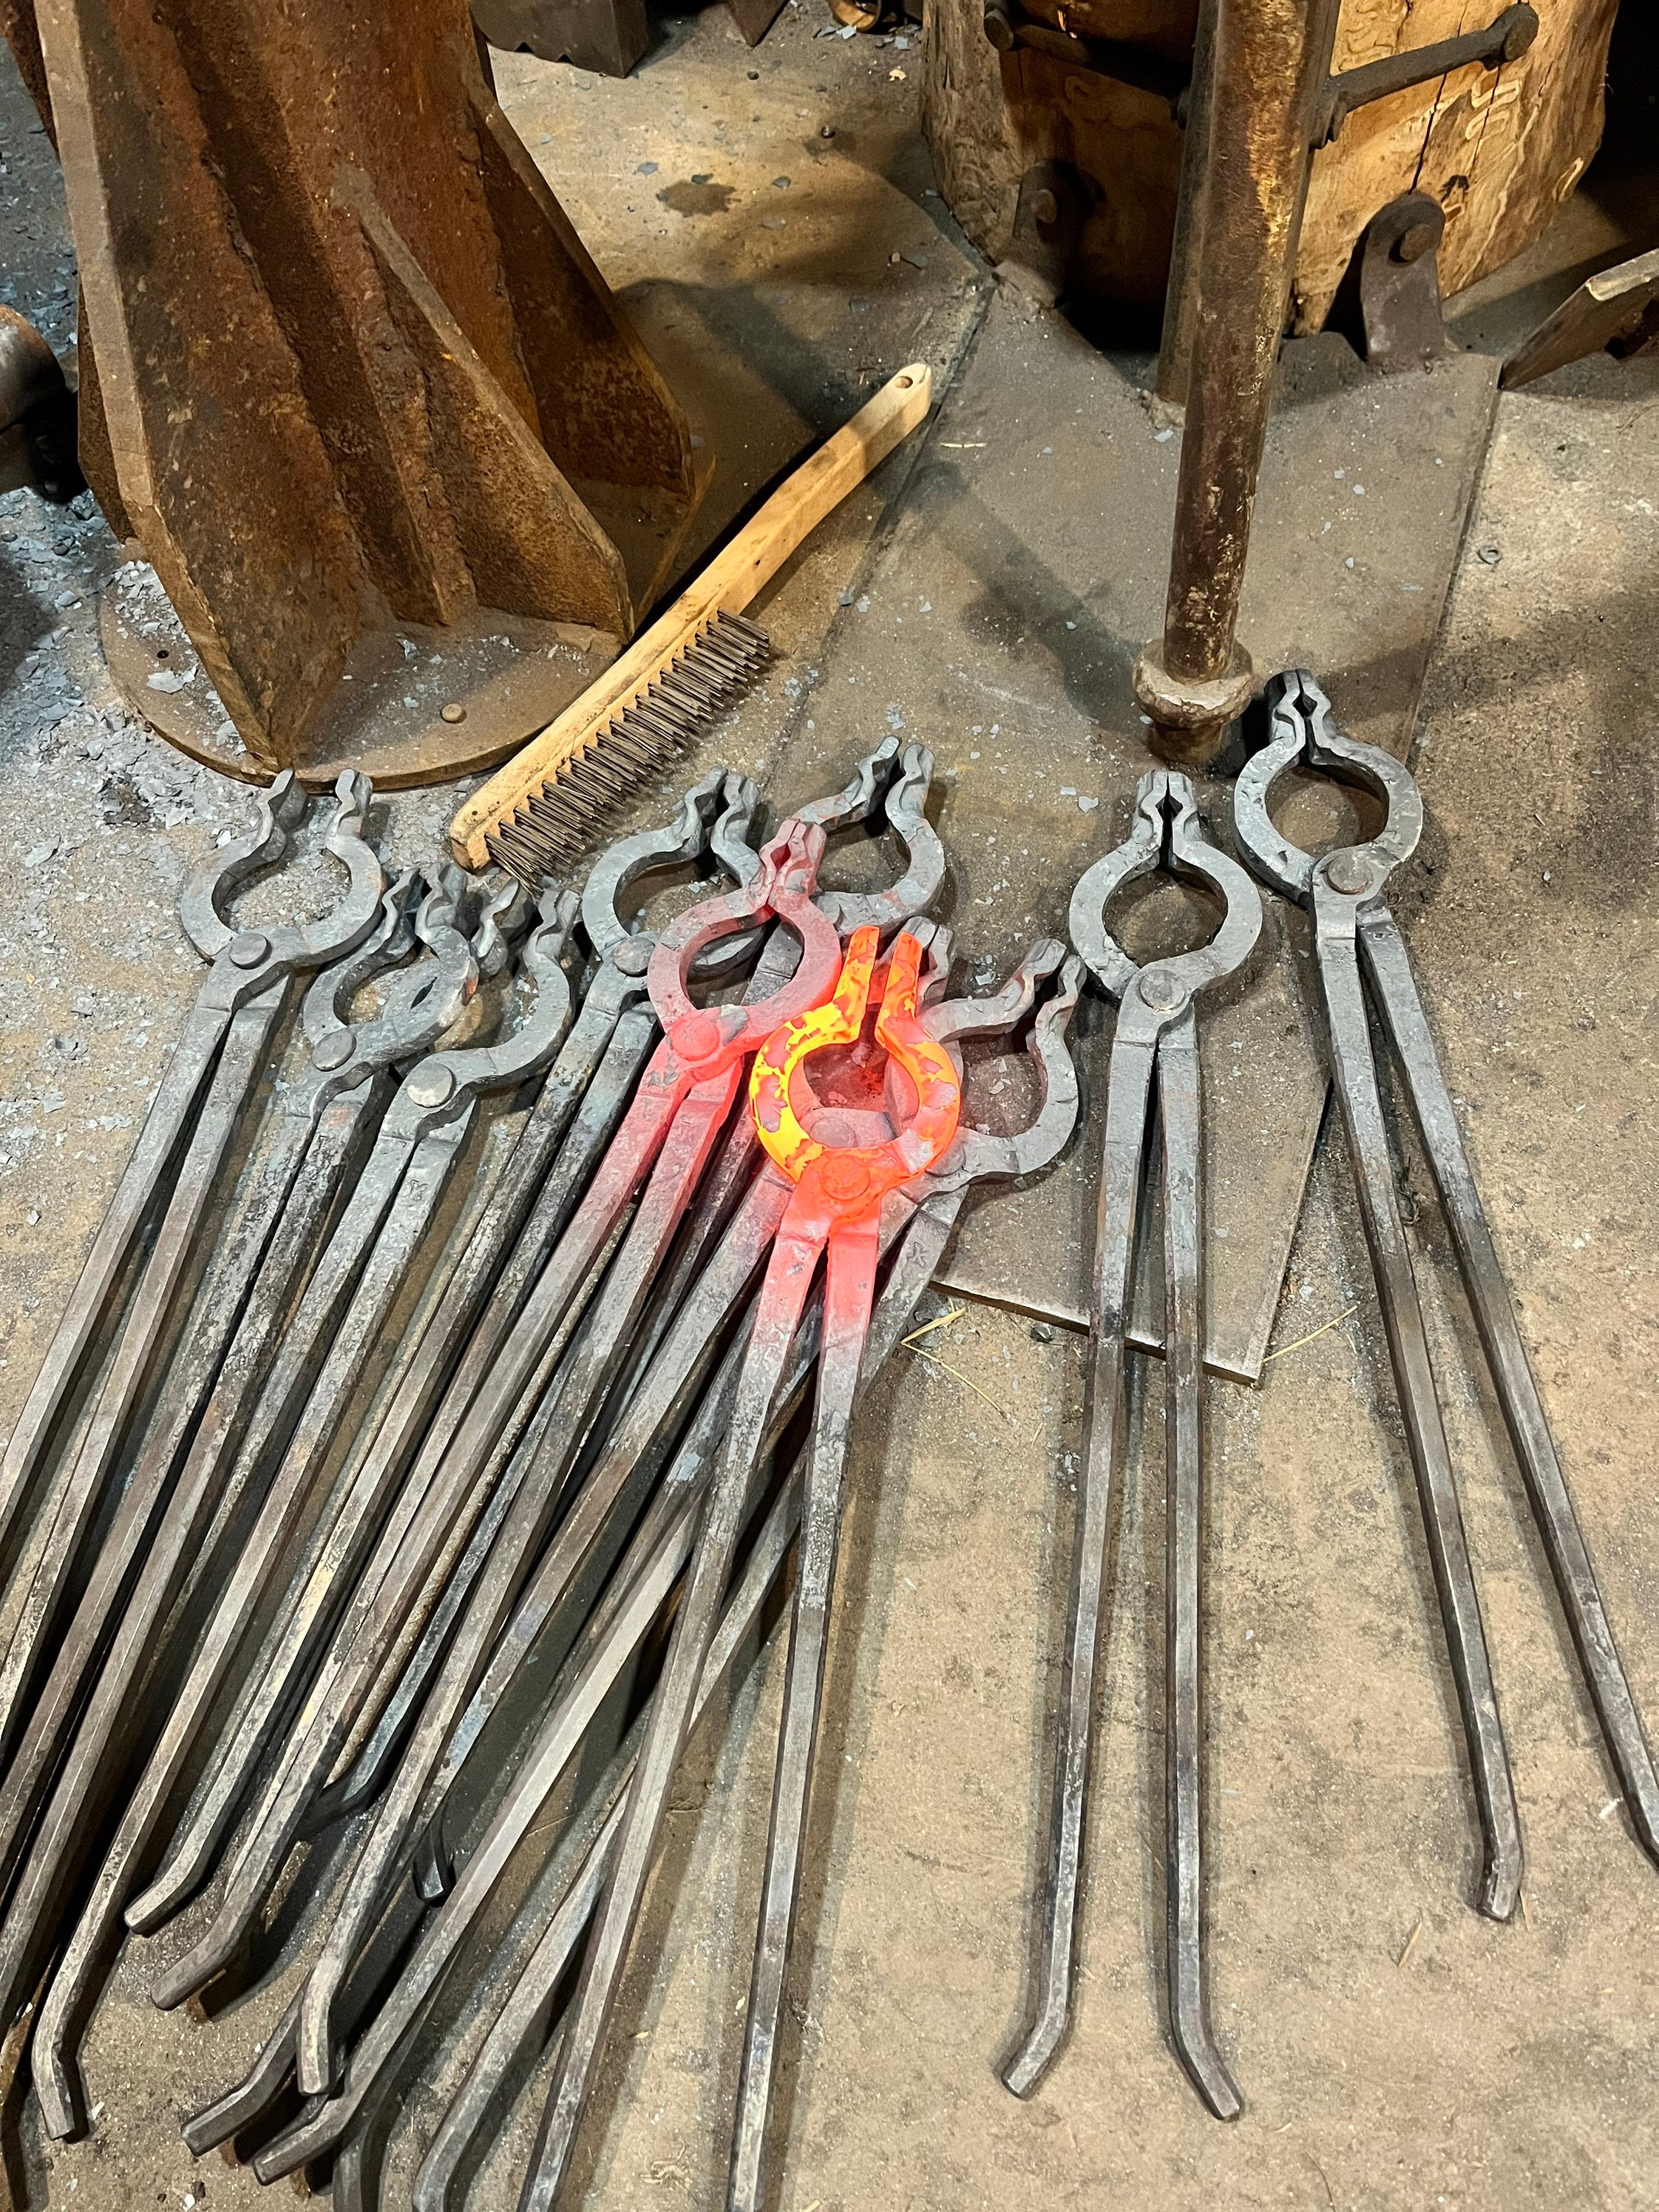 Blacksmith Tongs Forging Metal Working Tong Set. V-bit Tongs and Gooseneck Tongs  Forge Anvil Smithing 